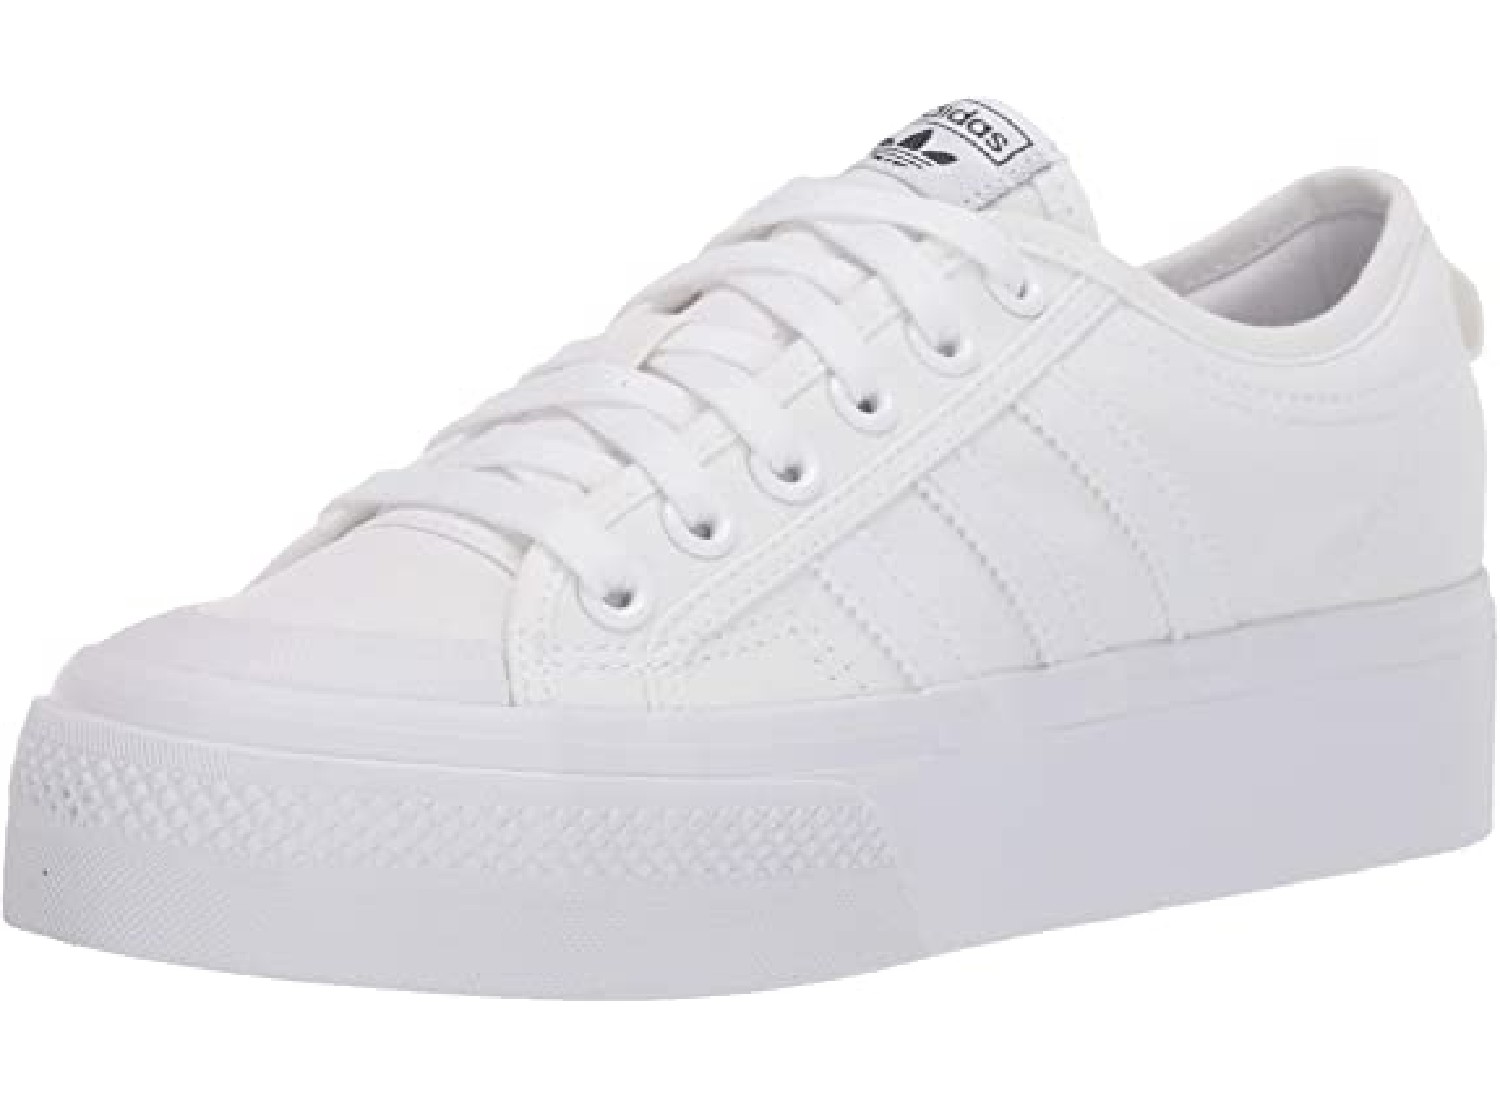 Plain white sneaker.